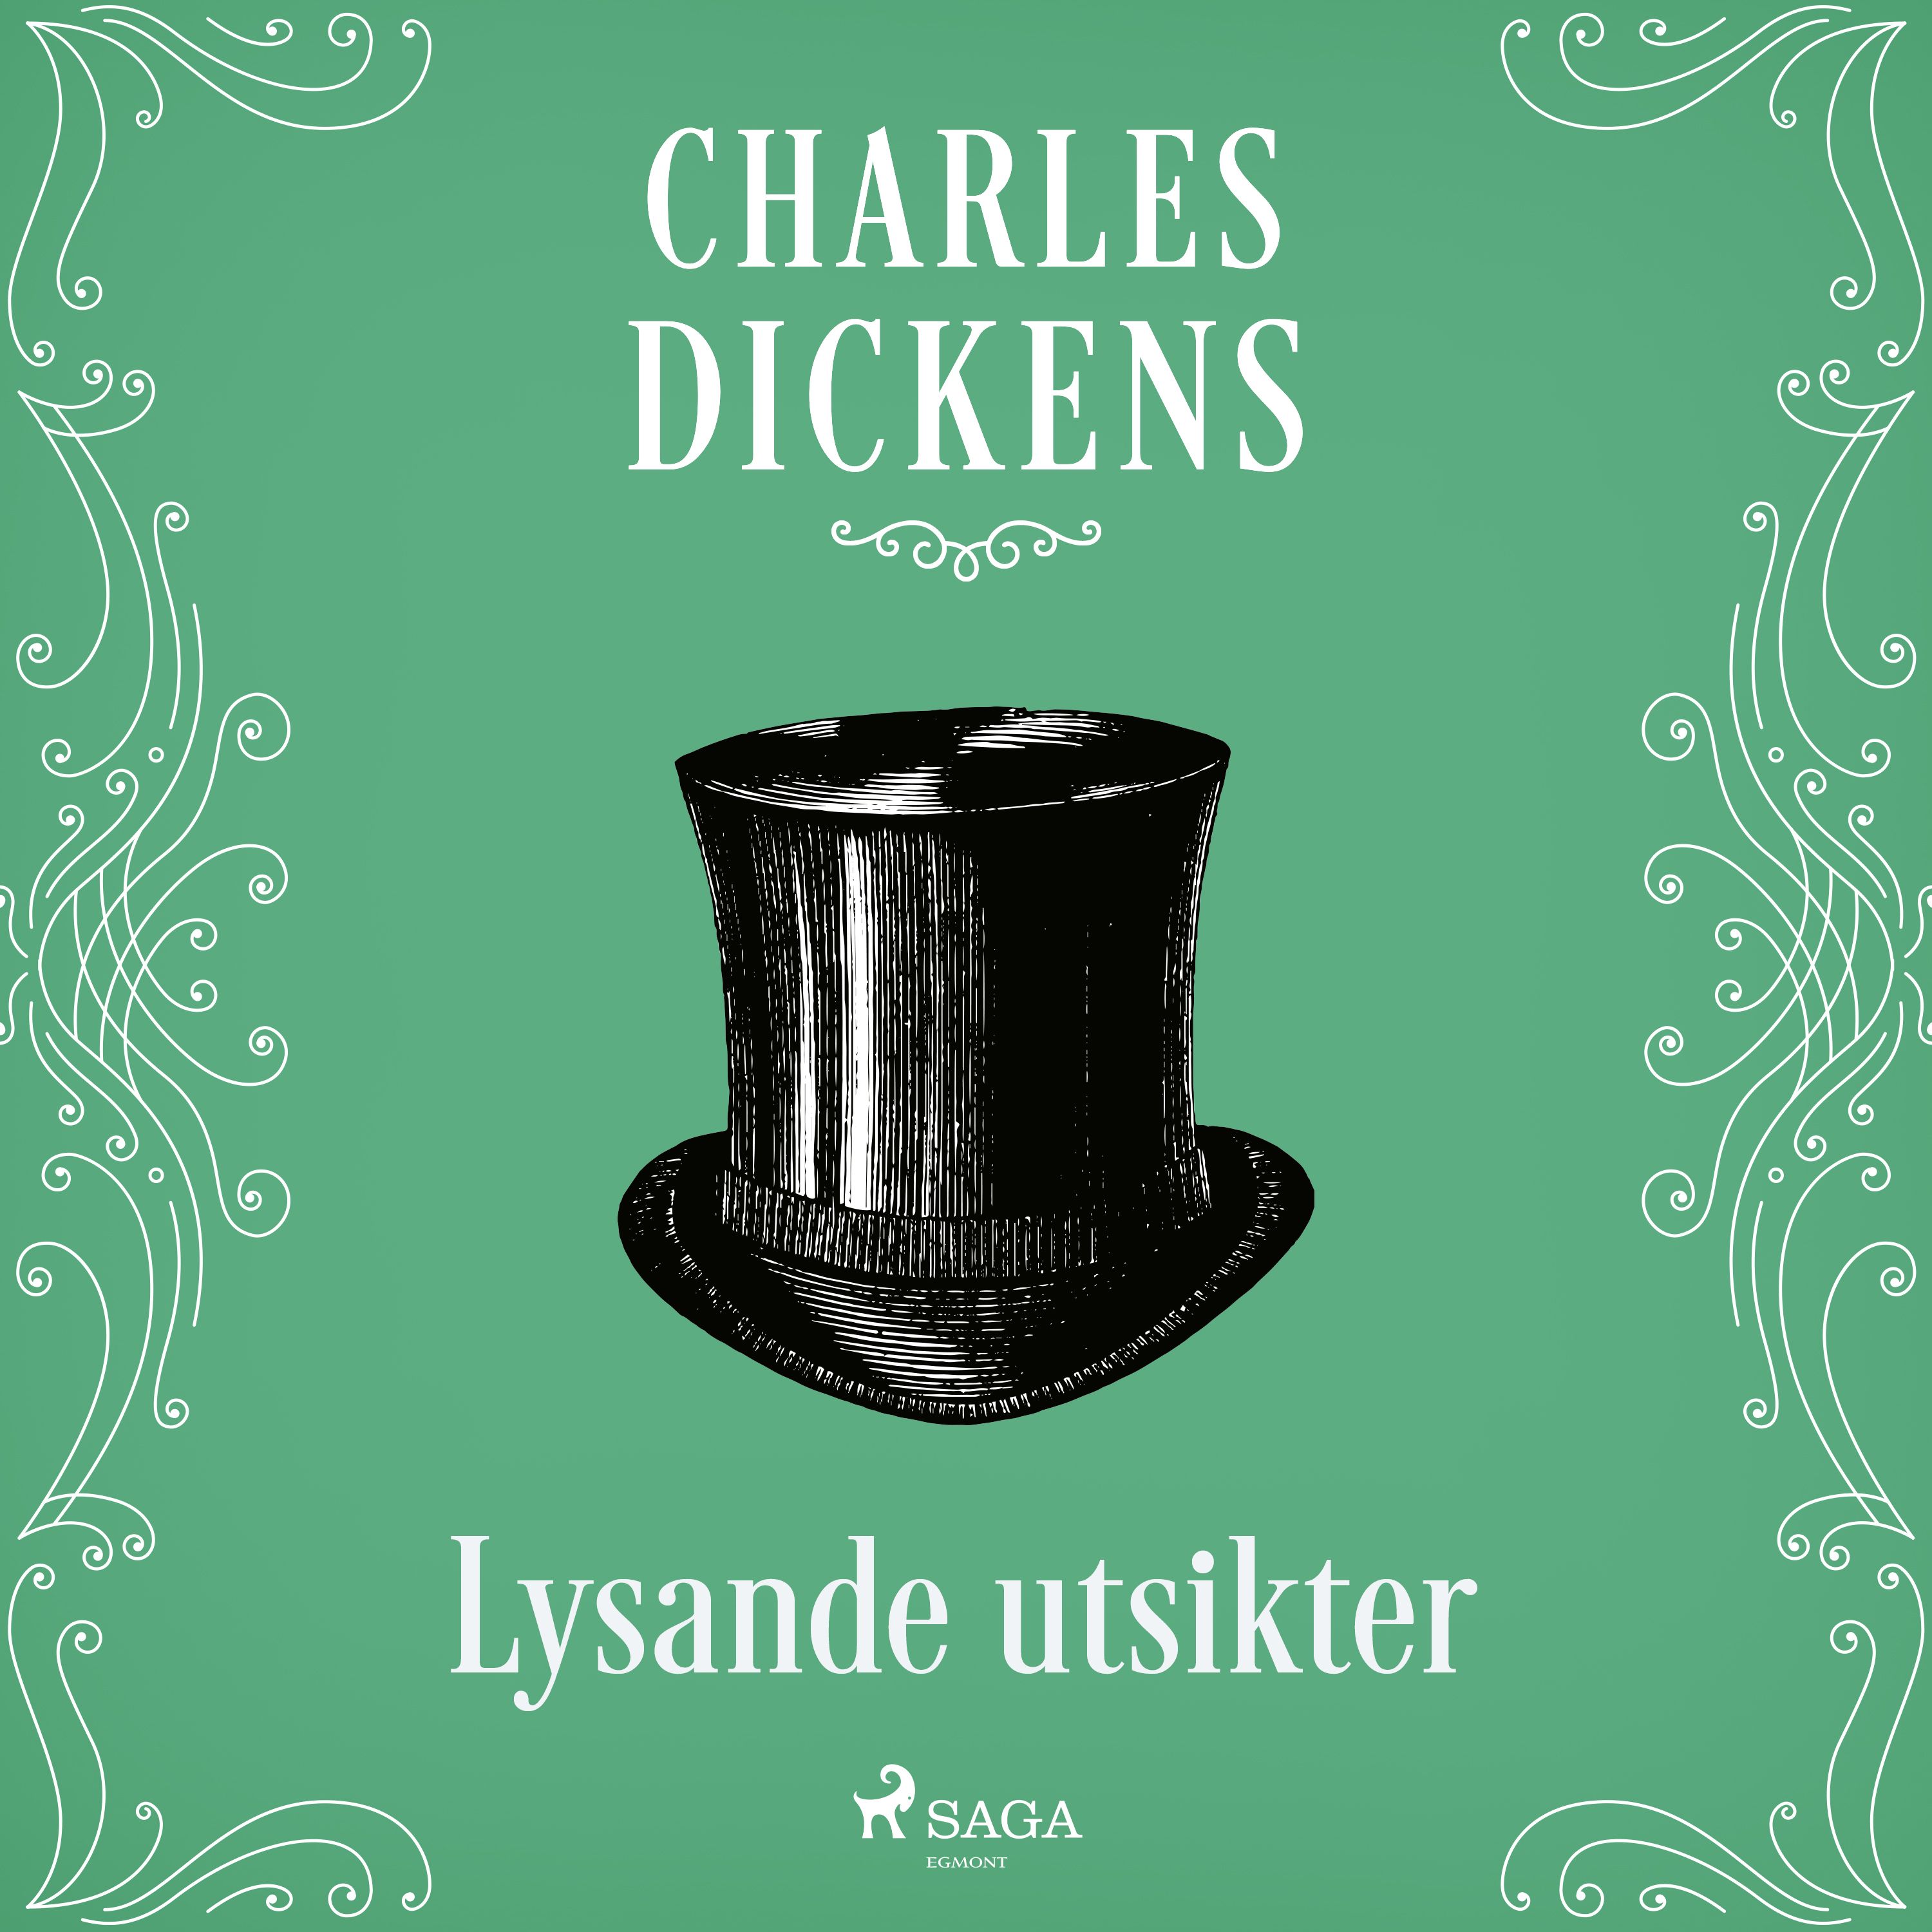 Lysande utsikter, ljudbok av Charles Dickens